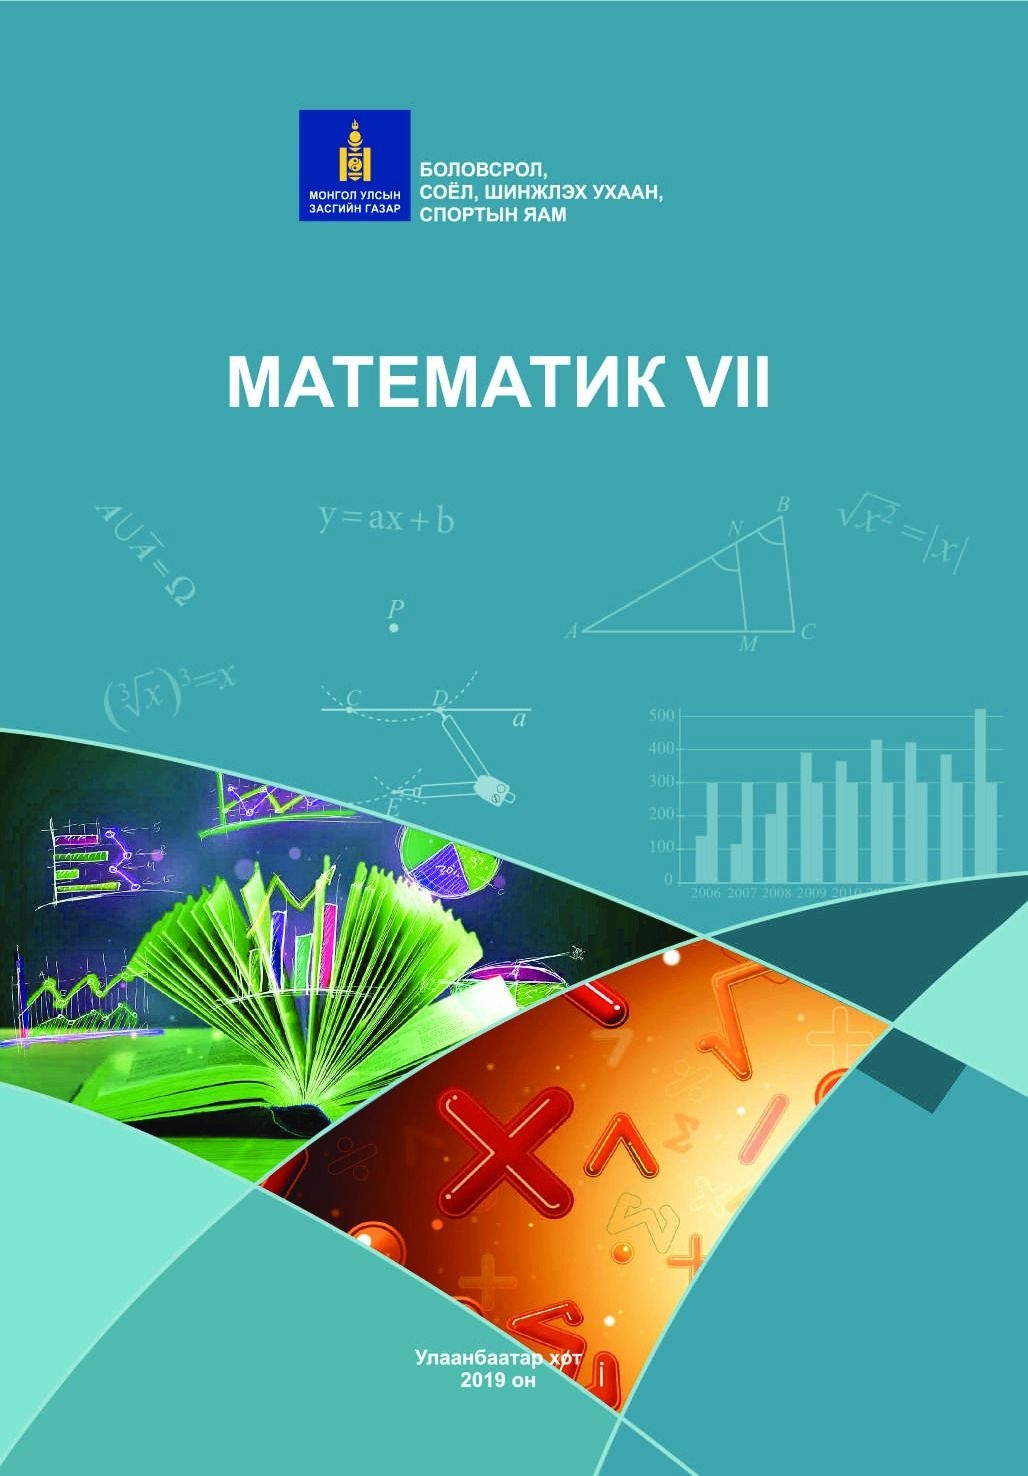 Математик-7 (21-22)